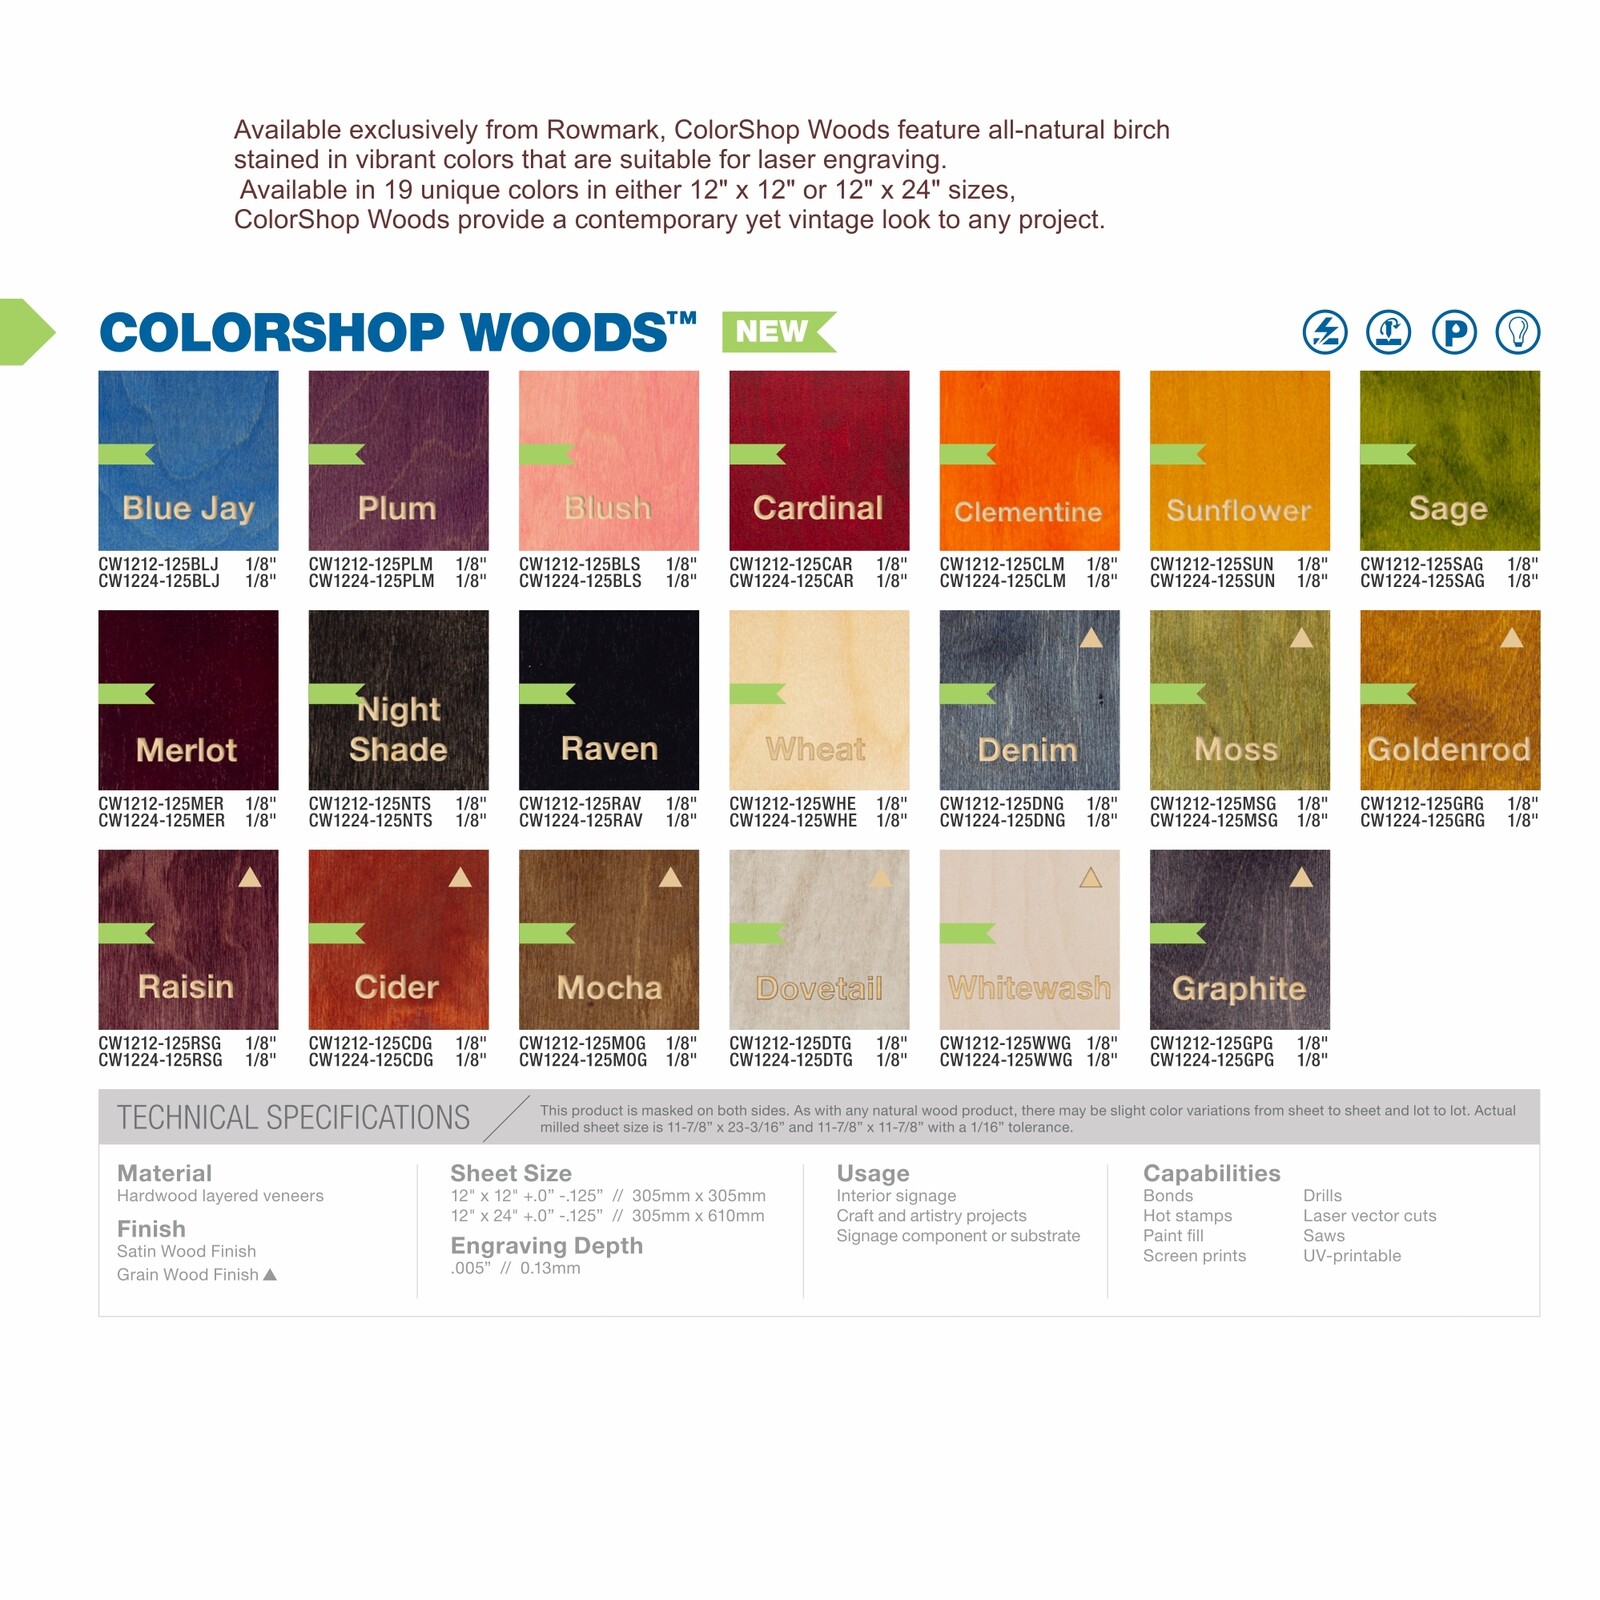 ColorShop Woods